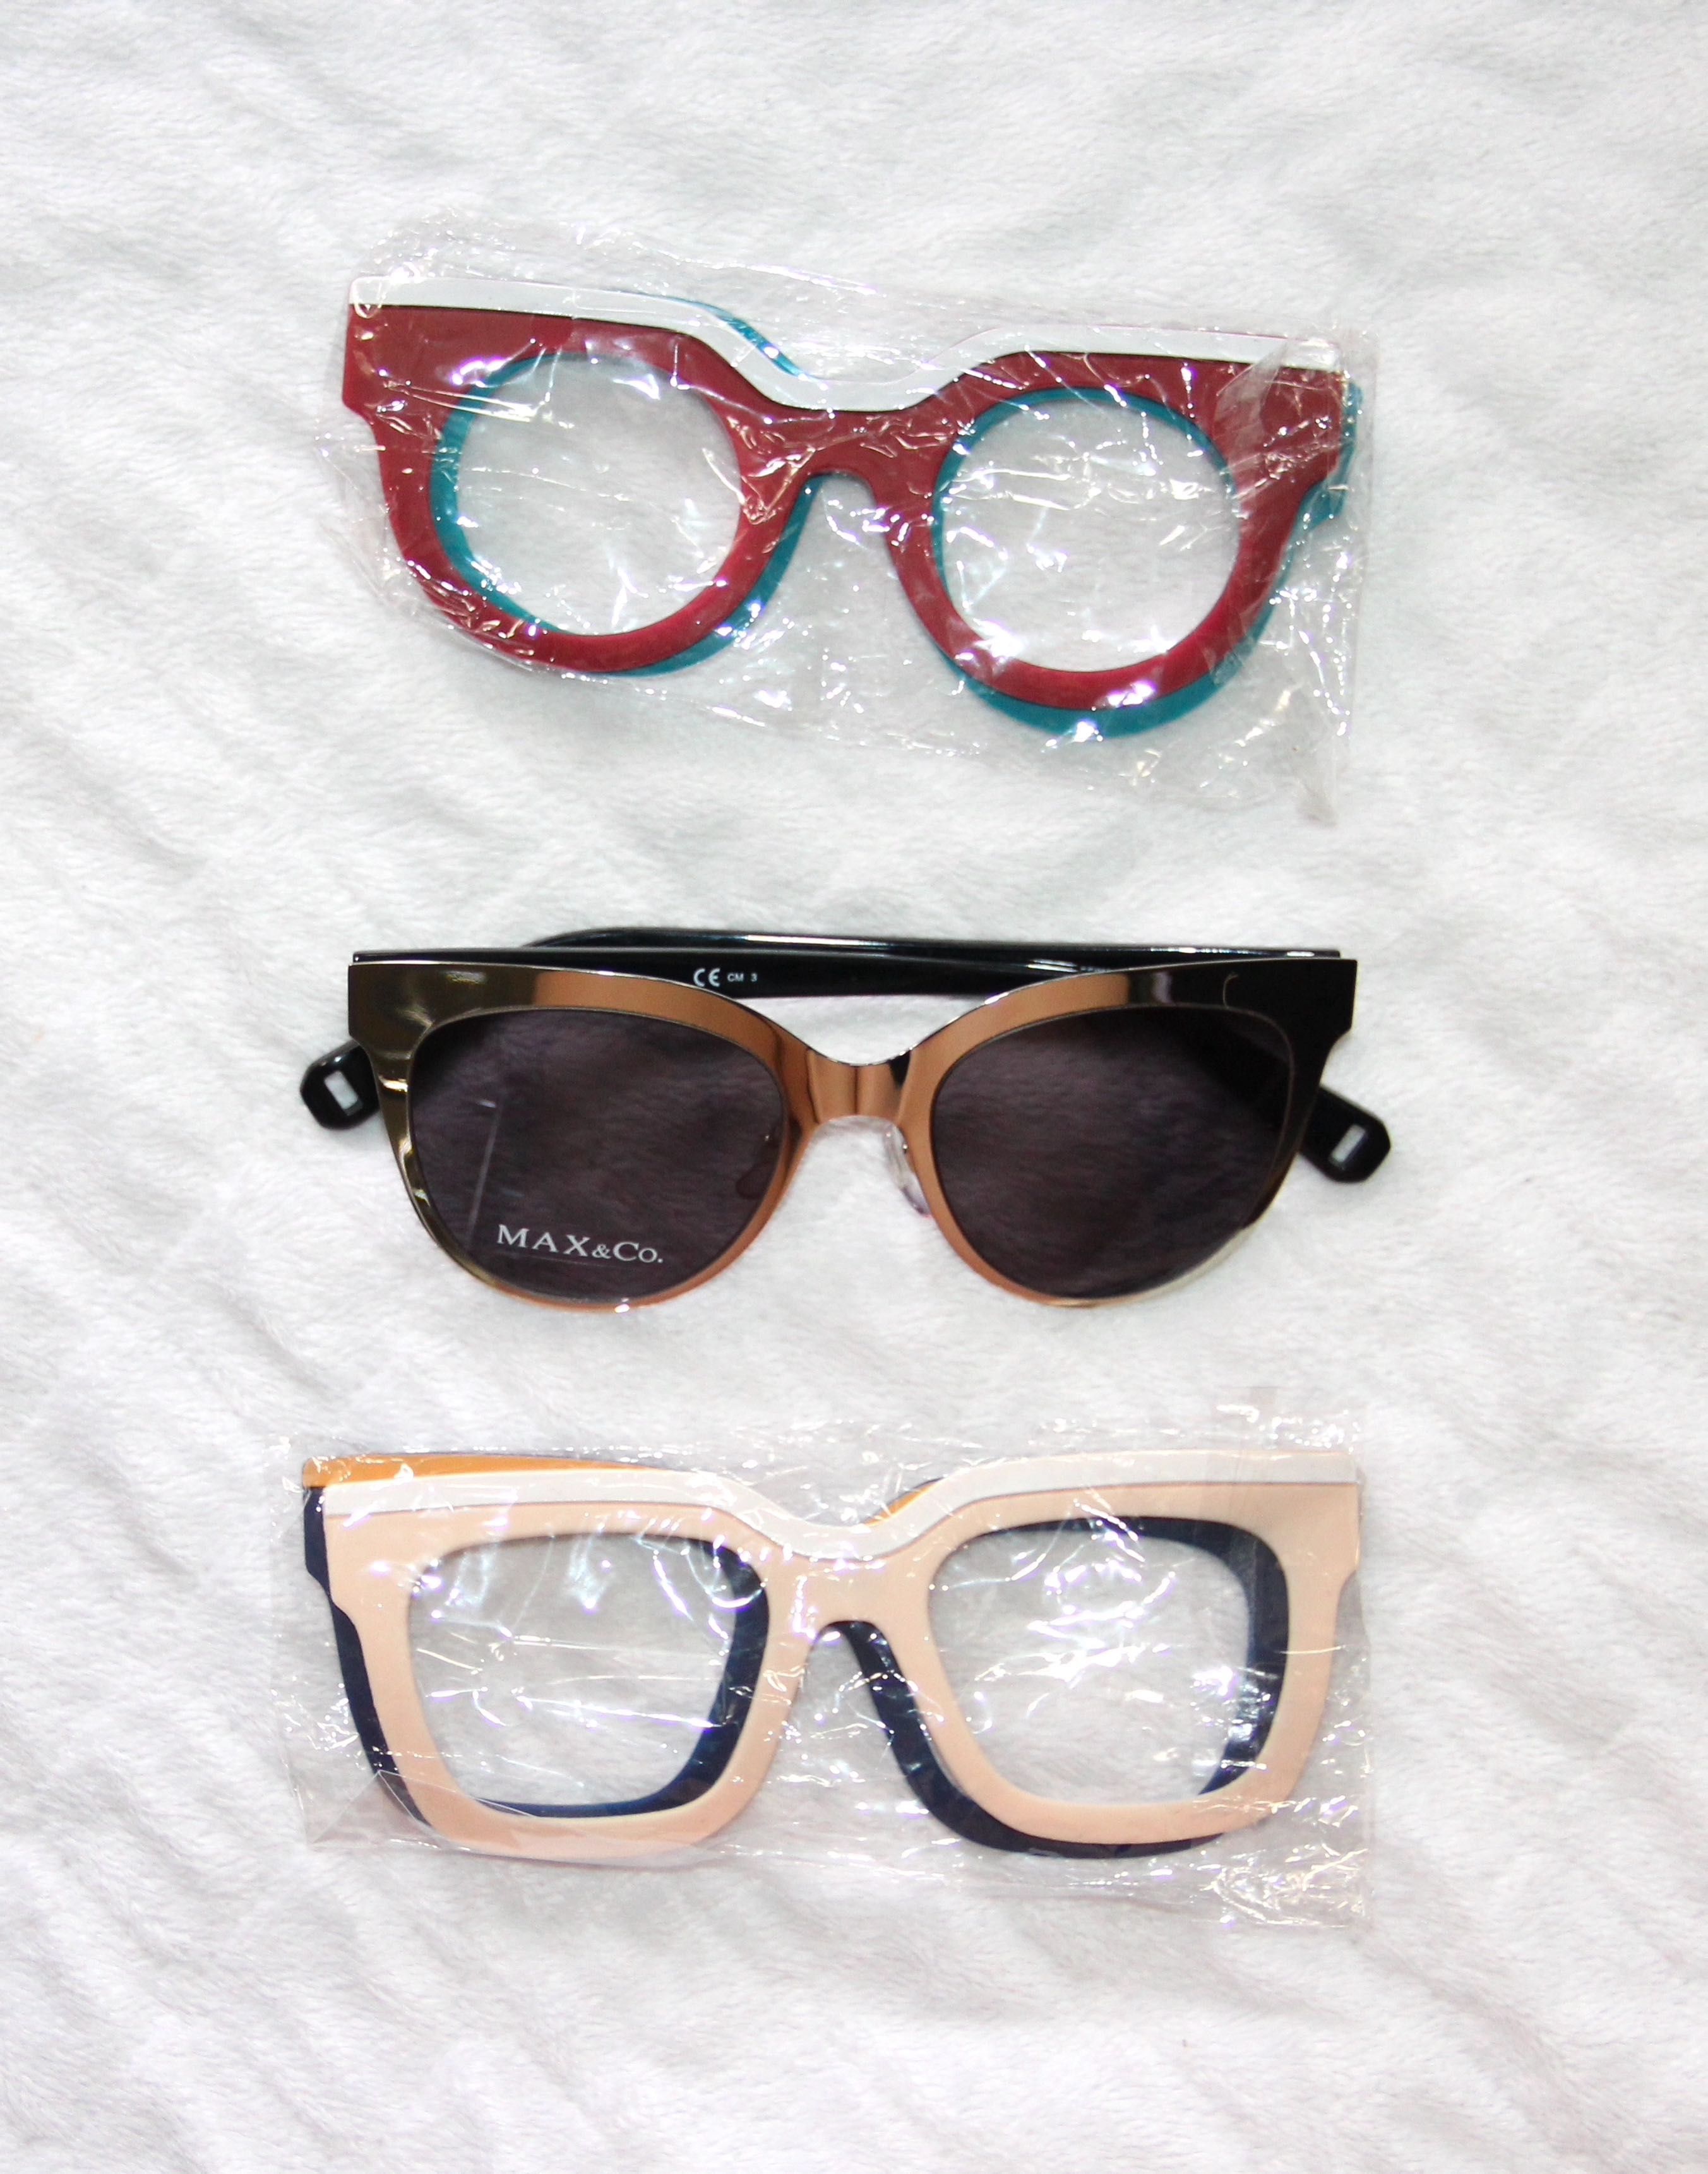 srebrne okulary przeciwsłoneczne max & co. z nakładkami ray ban